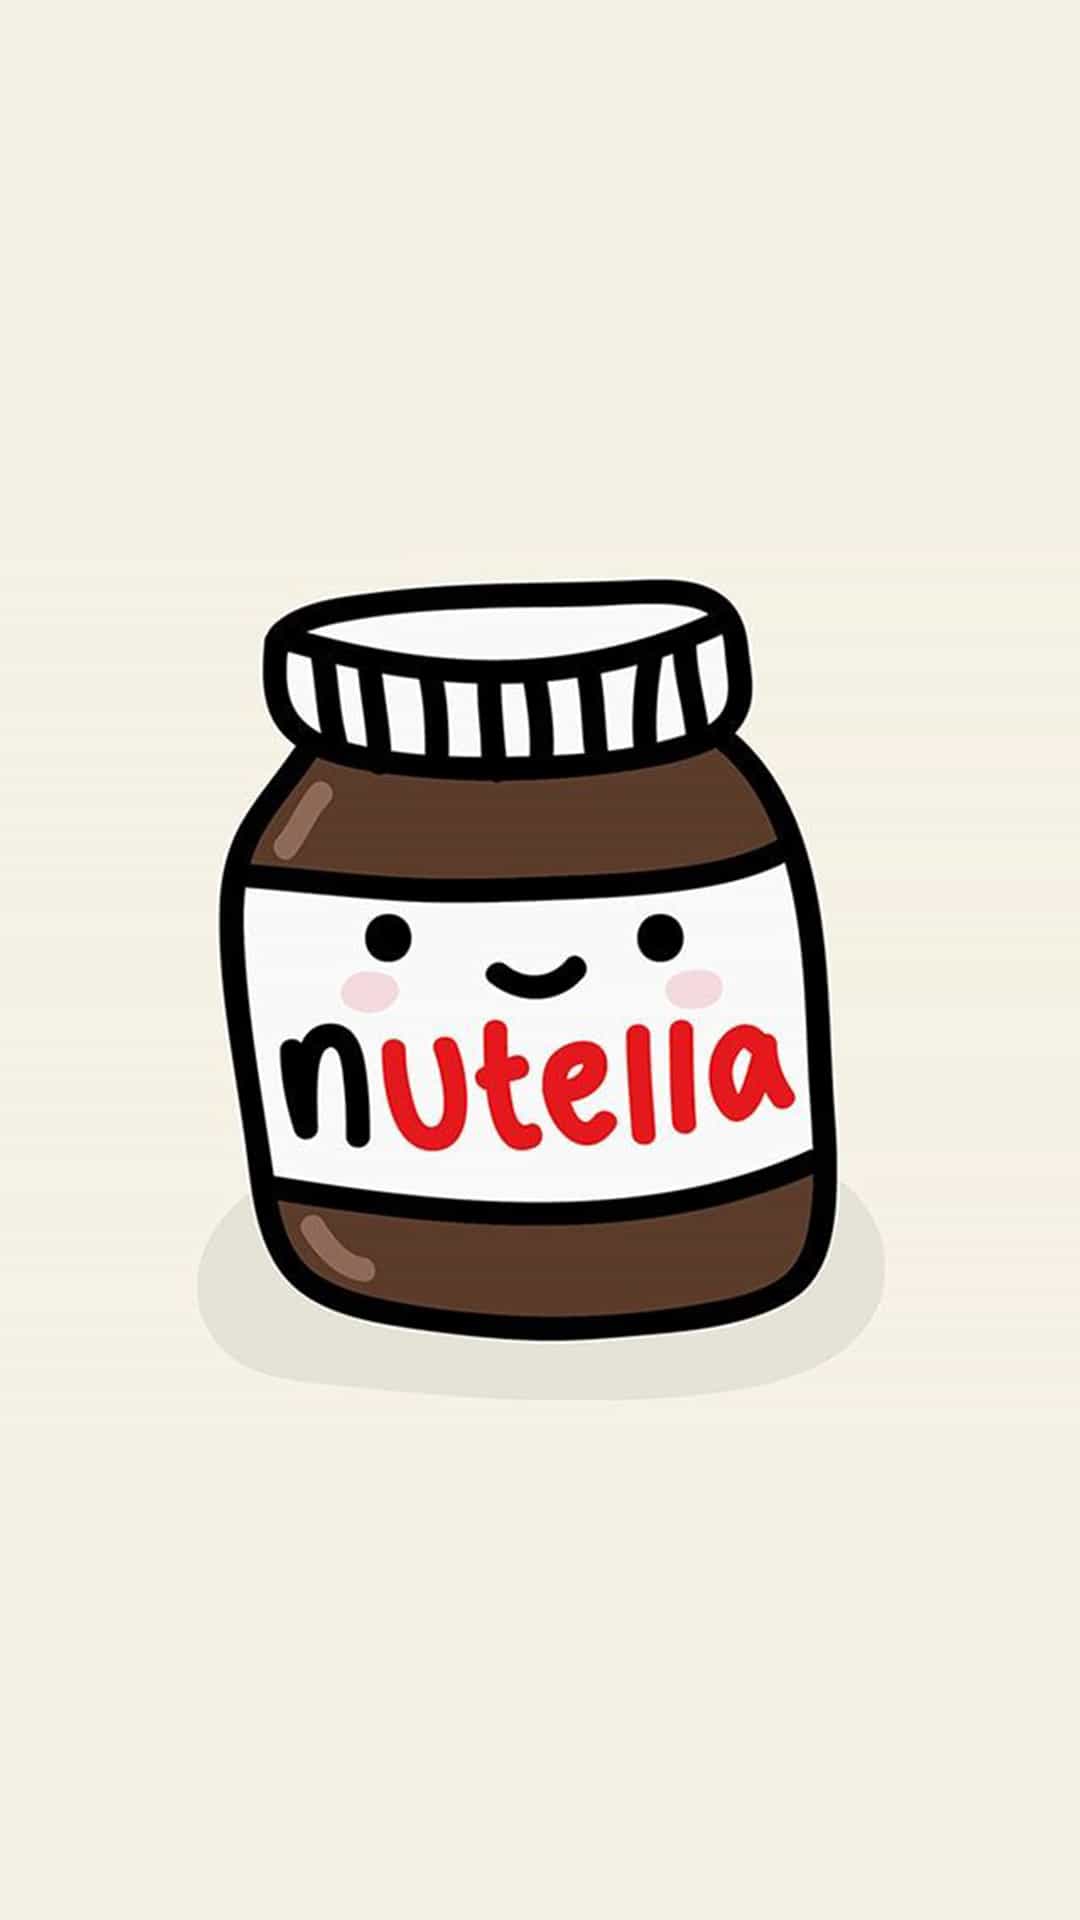 Cute Nutella Jar Illustration Android Wallpaper